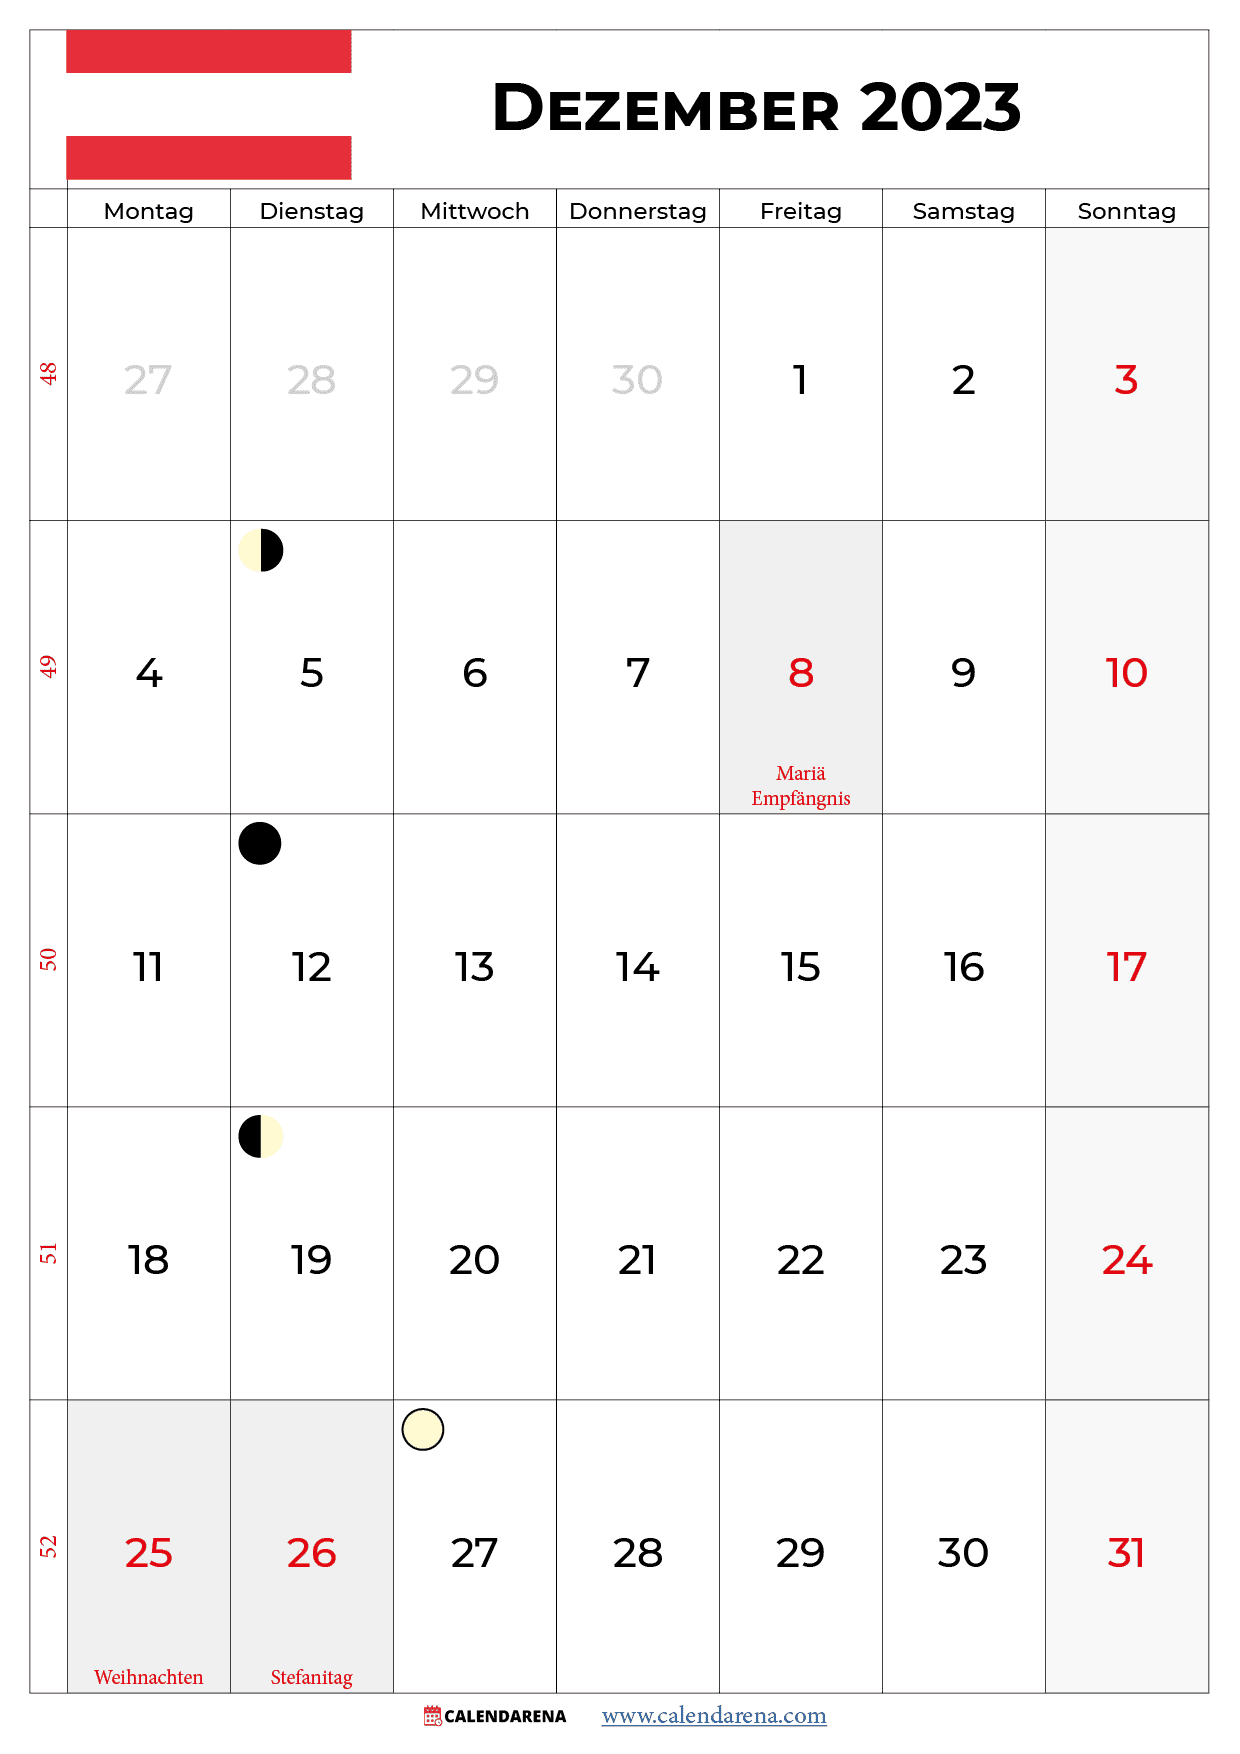 kalender dezember 2023 zum ausdrucken österreich